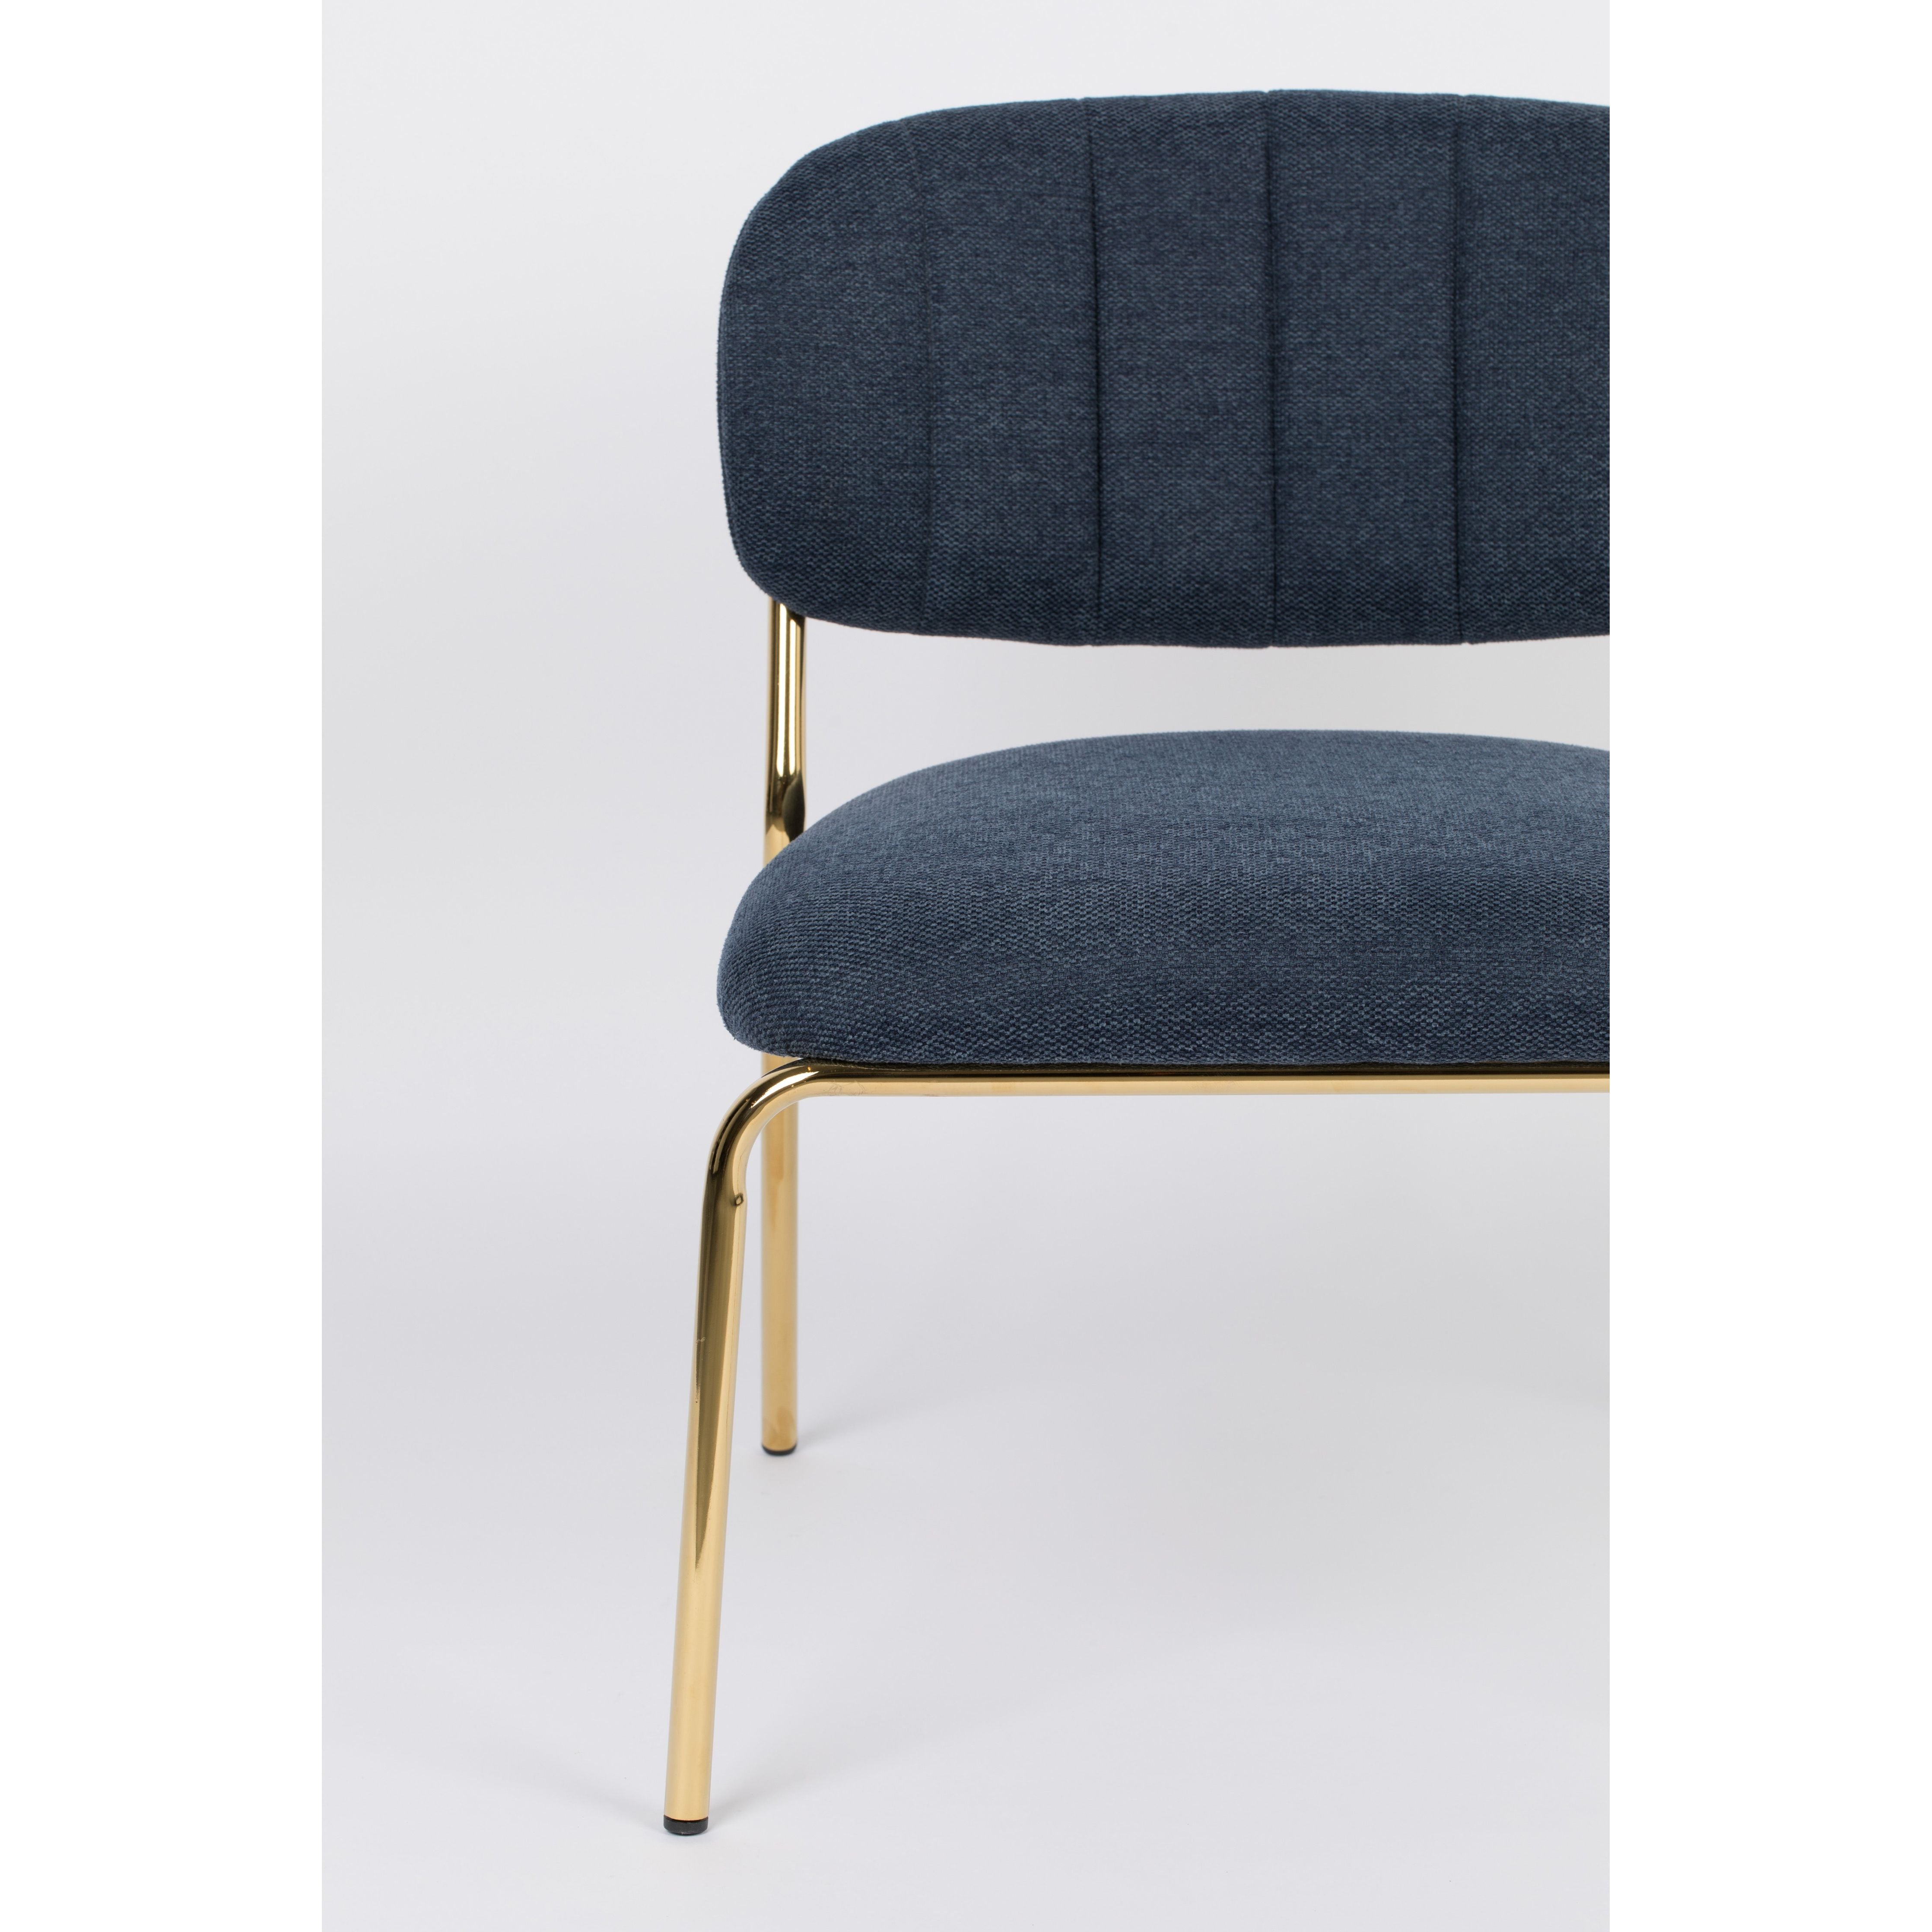 Jolien armchair gold/dark blue